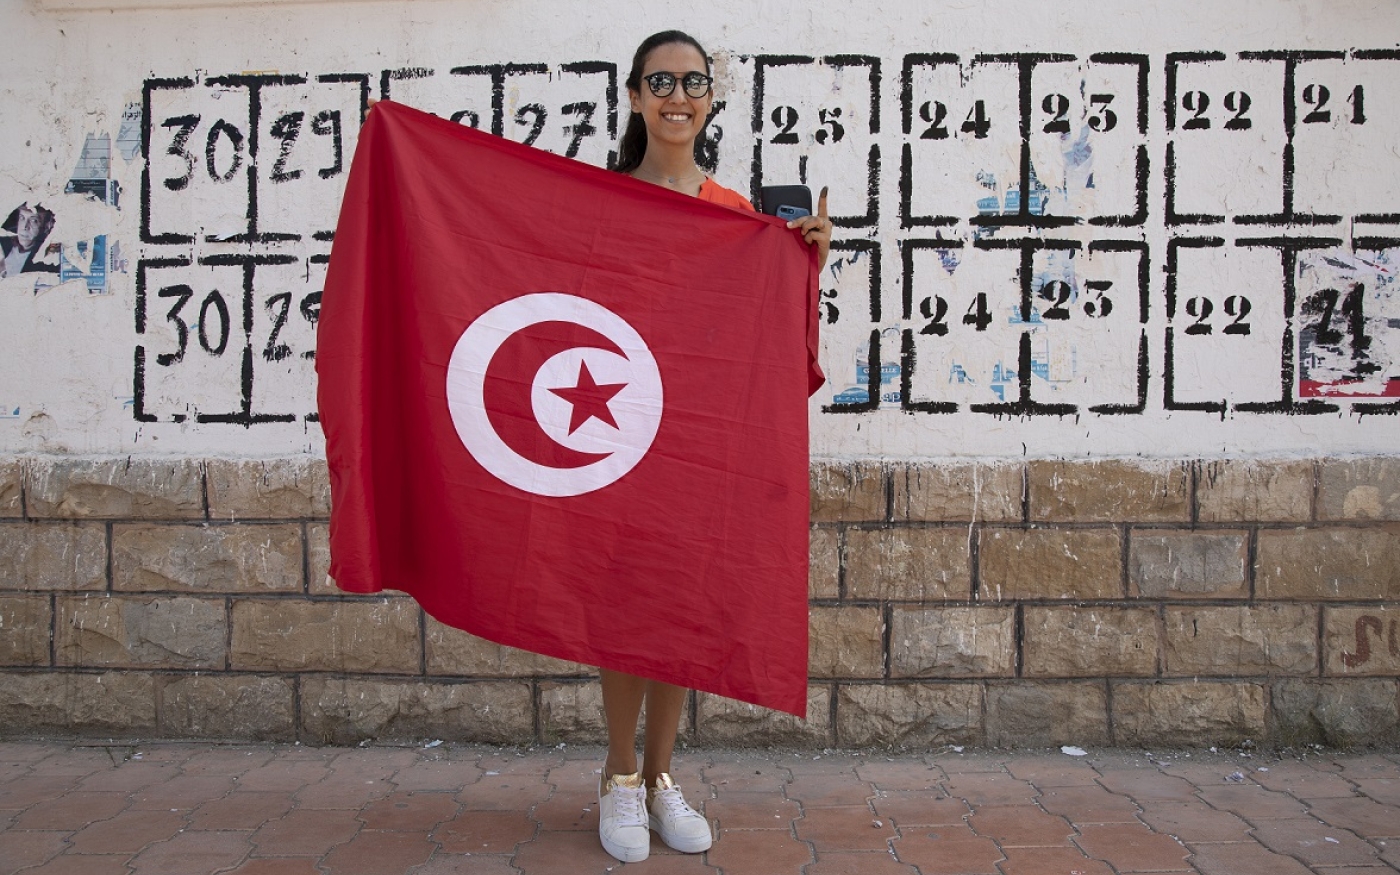 « Le pays doit aller de l’avant et être moderniste », a déclaré Sandra Maarf, une ingénieure de 28 ans (MEE/Lotfi el-Ghariani).